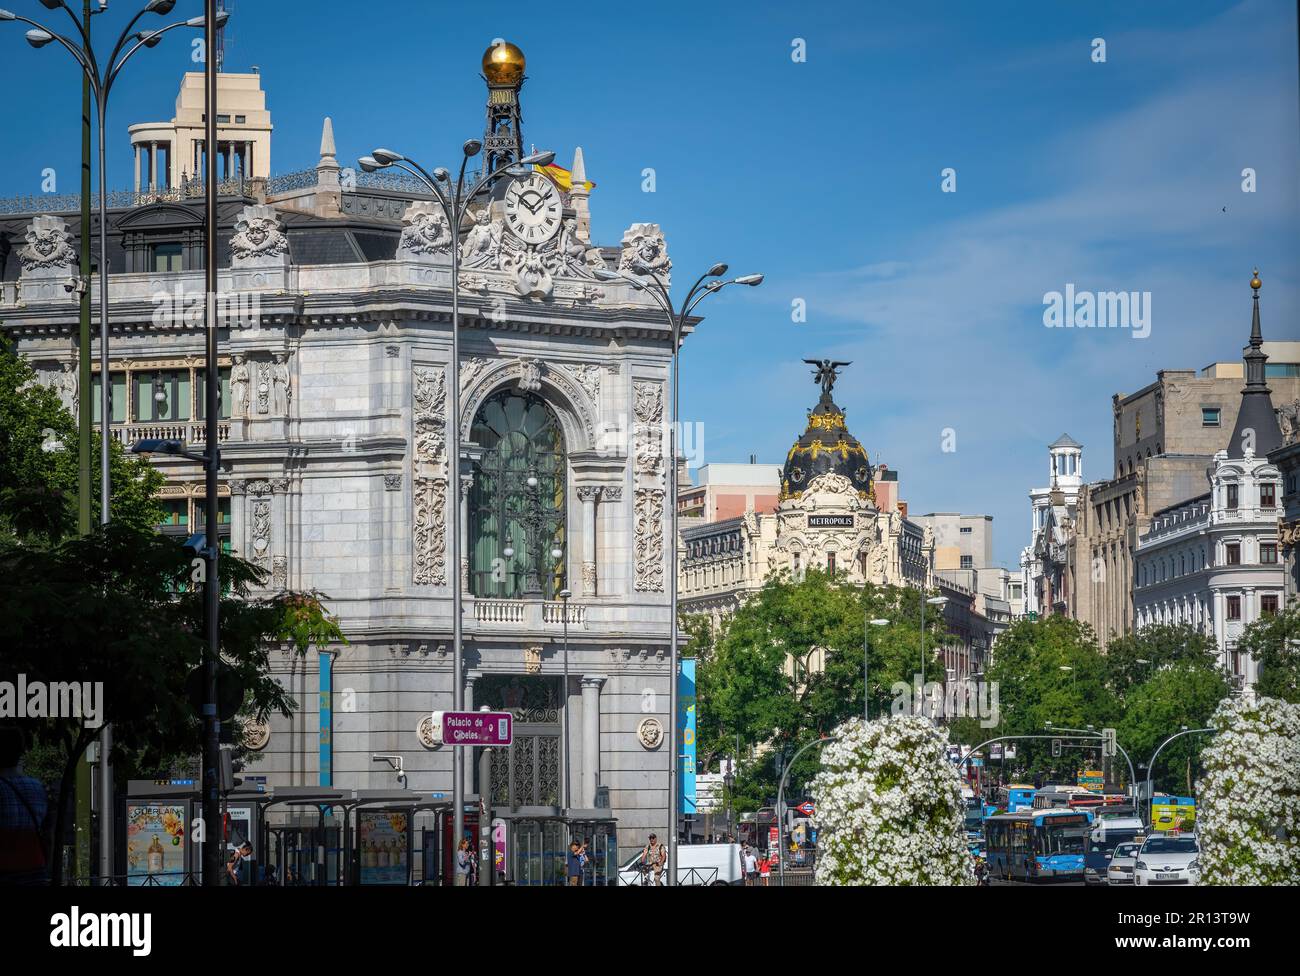 Calle de Alcala Street with Bank of Spain (Banco de España) and Metropolis Building - Madrid, Spain Stock Photo